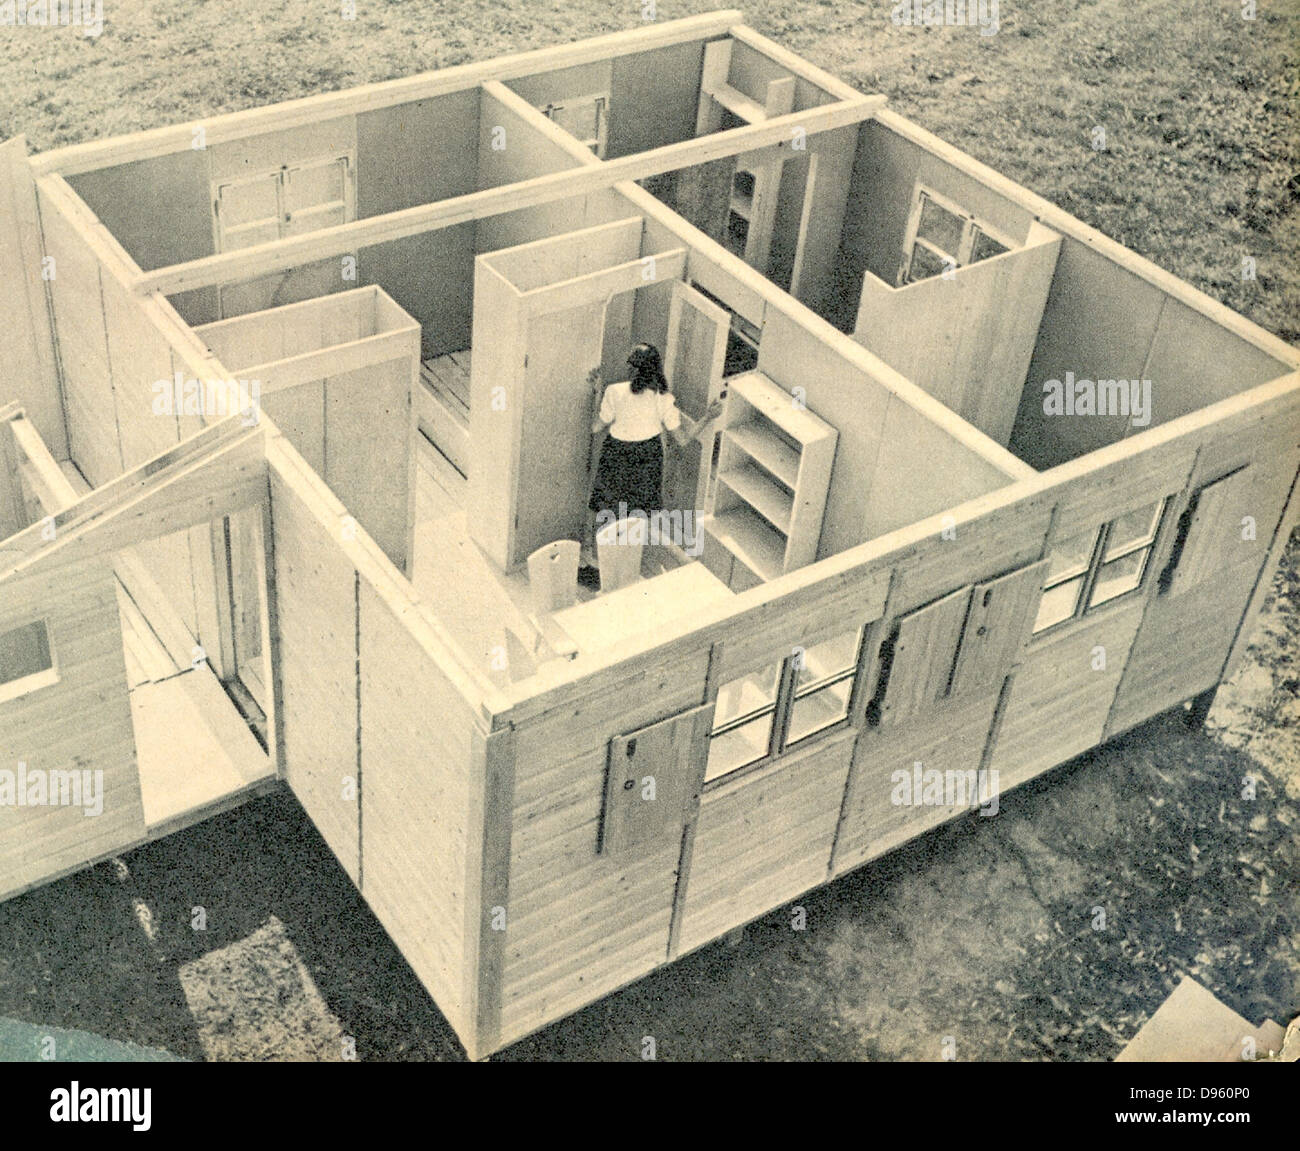 Post-guerra alemana casas prefabricadas se monta c1950 Foto de stock